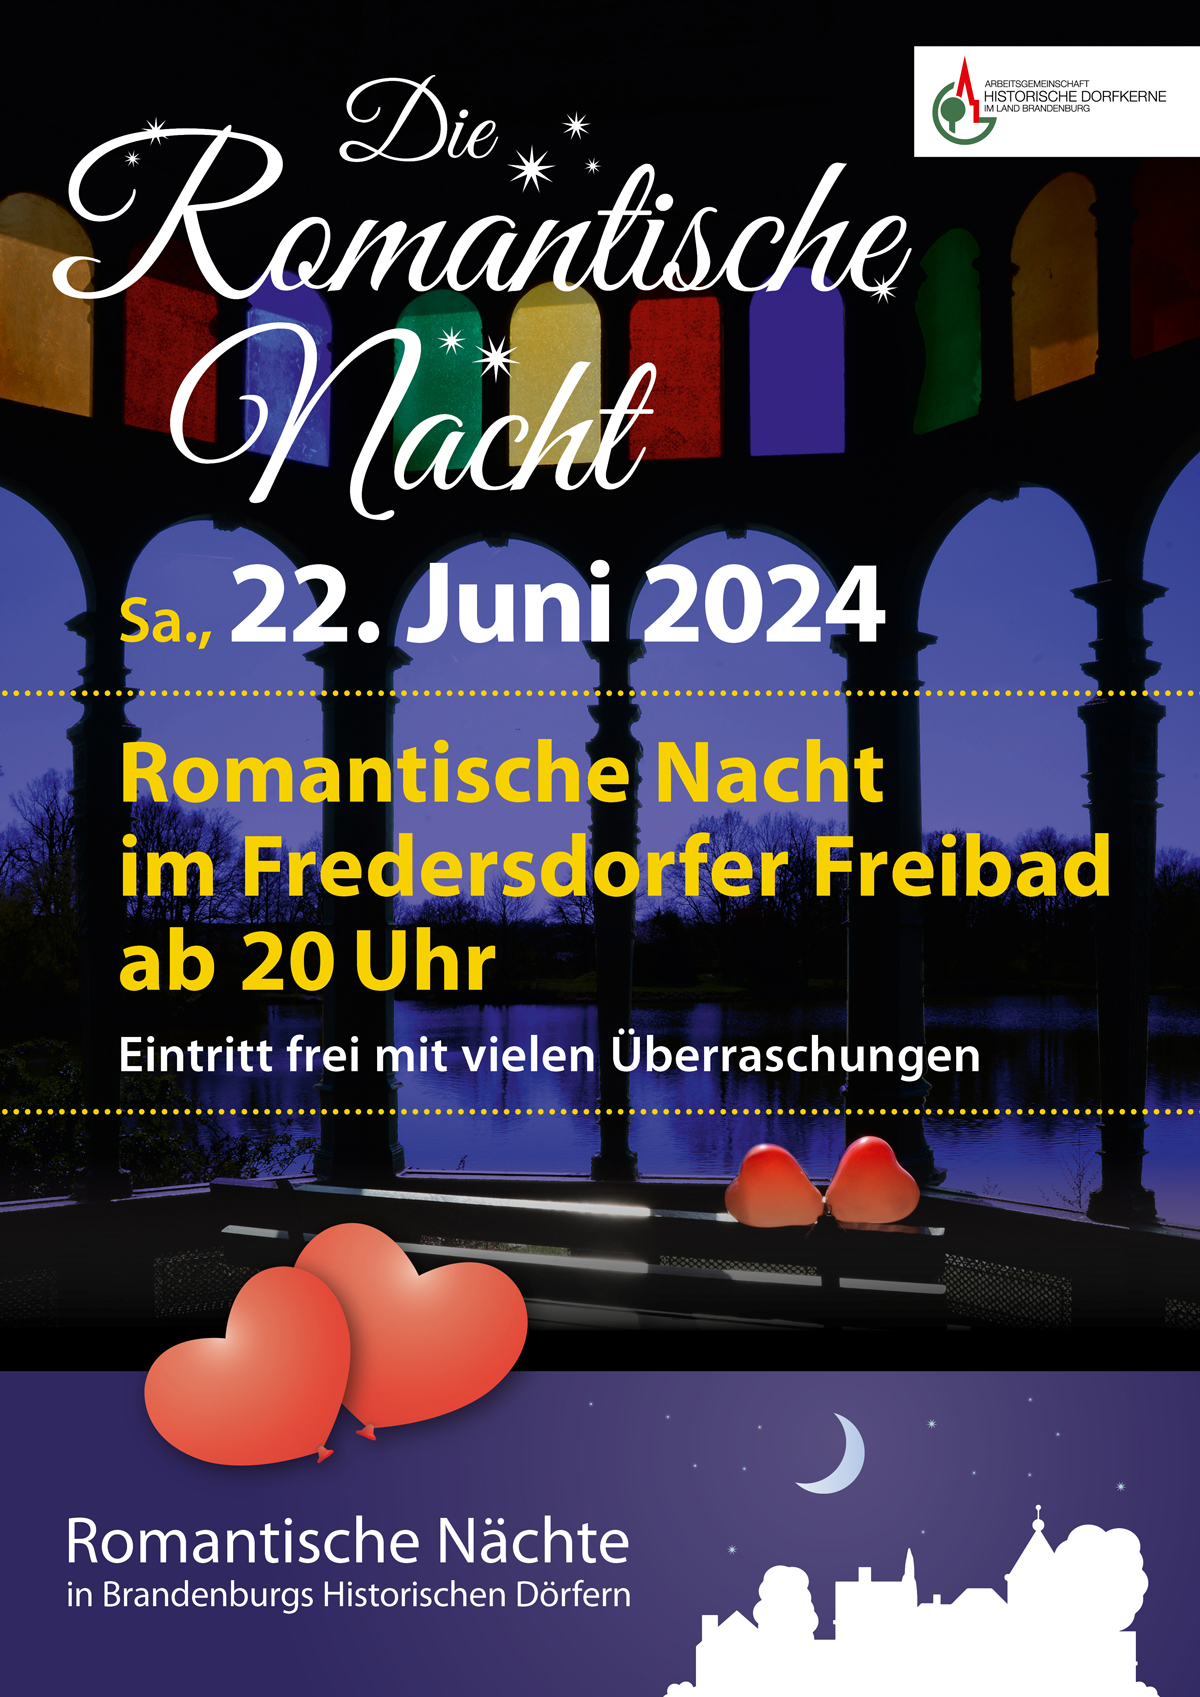 22.06.24,Romantische Nacht im Freibad Fredersdorf